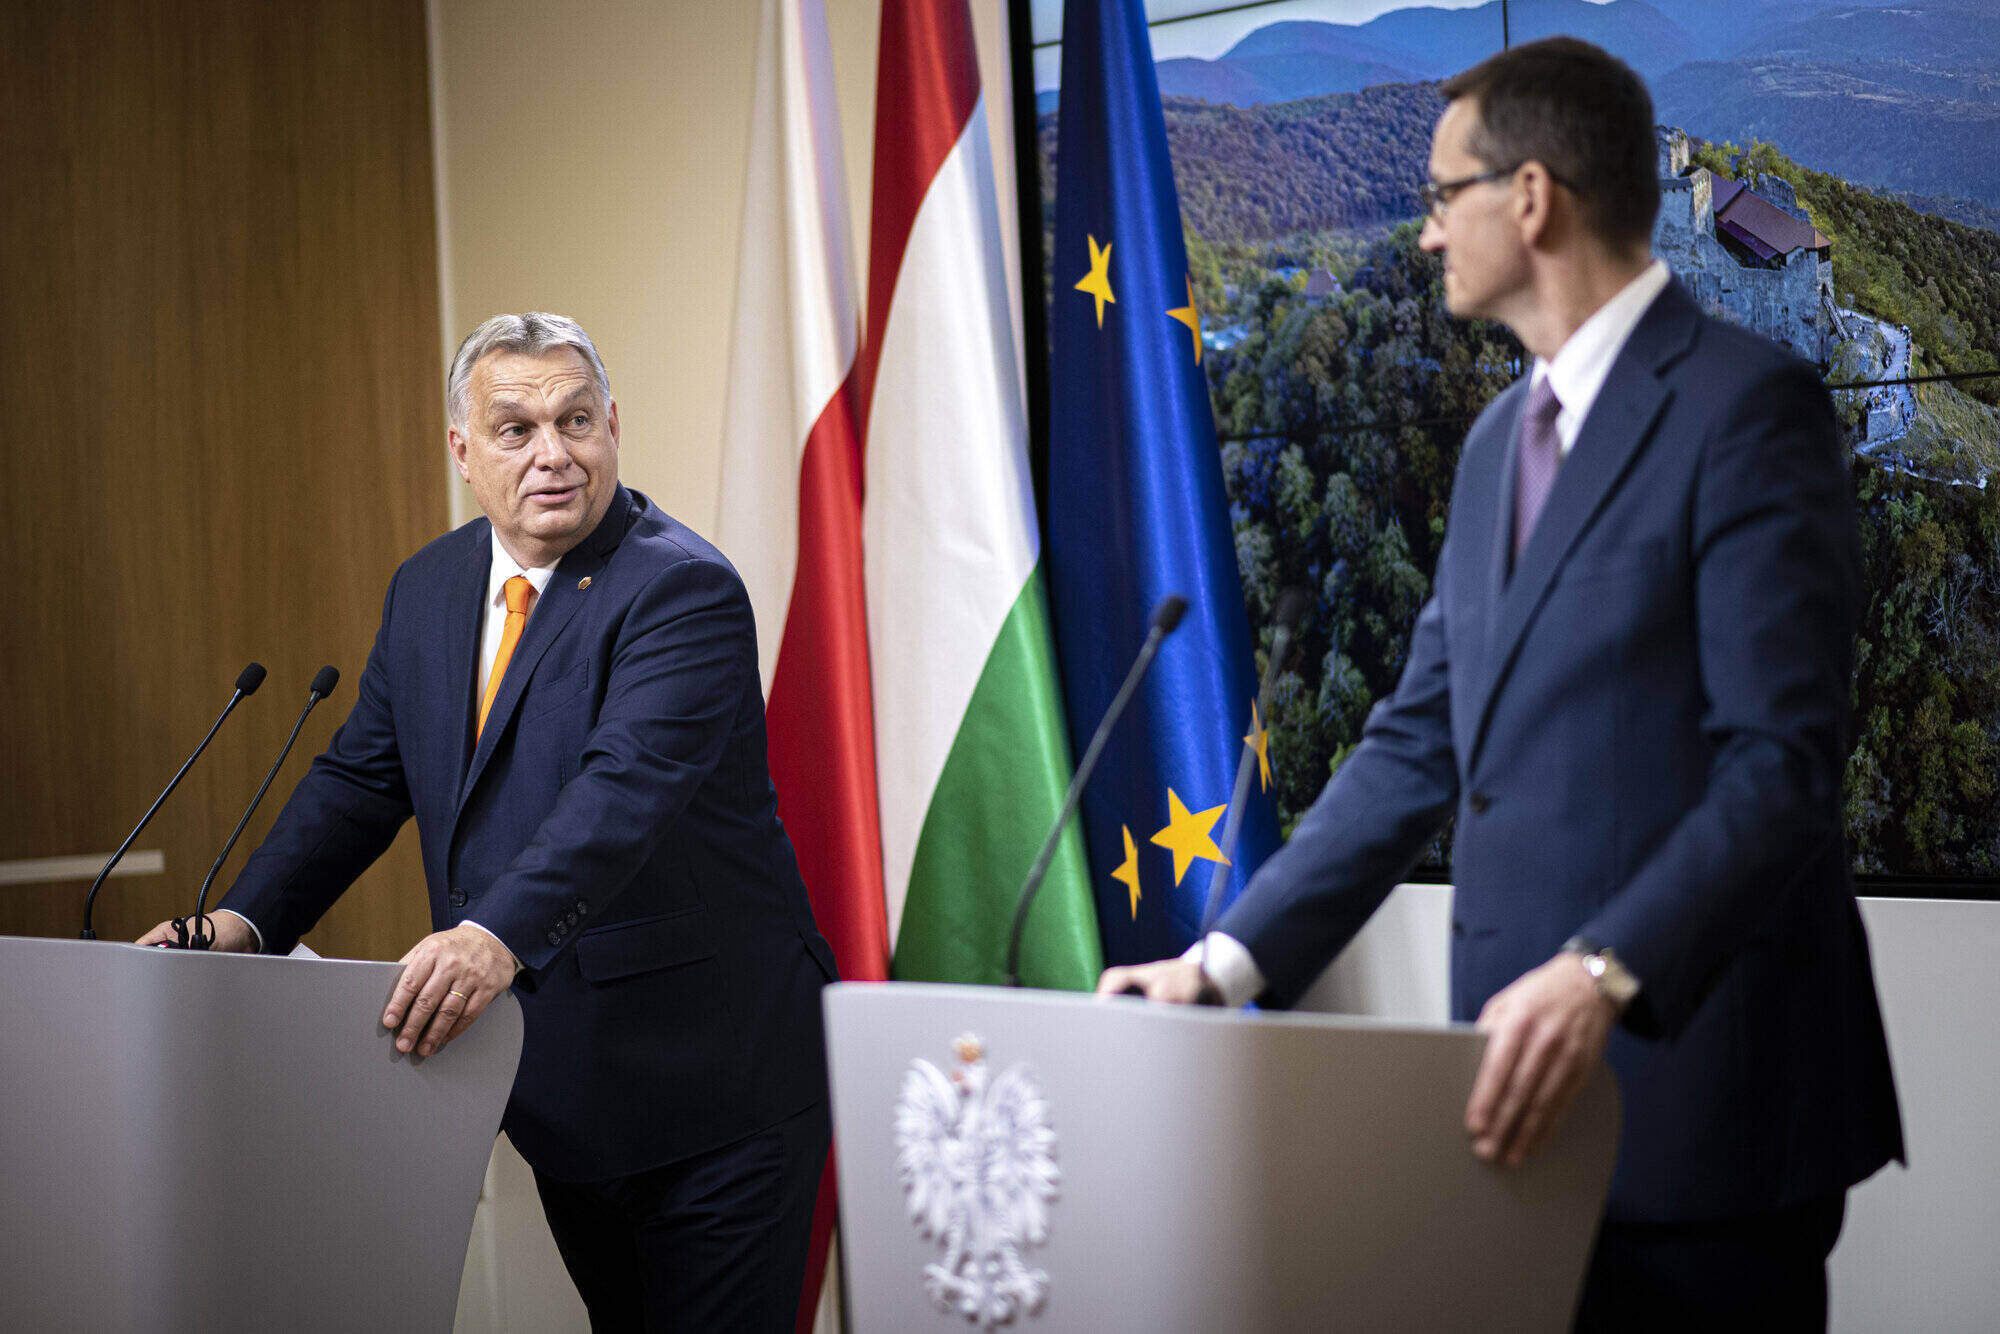 orbán morawiecki 欧盟预算否决权